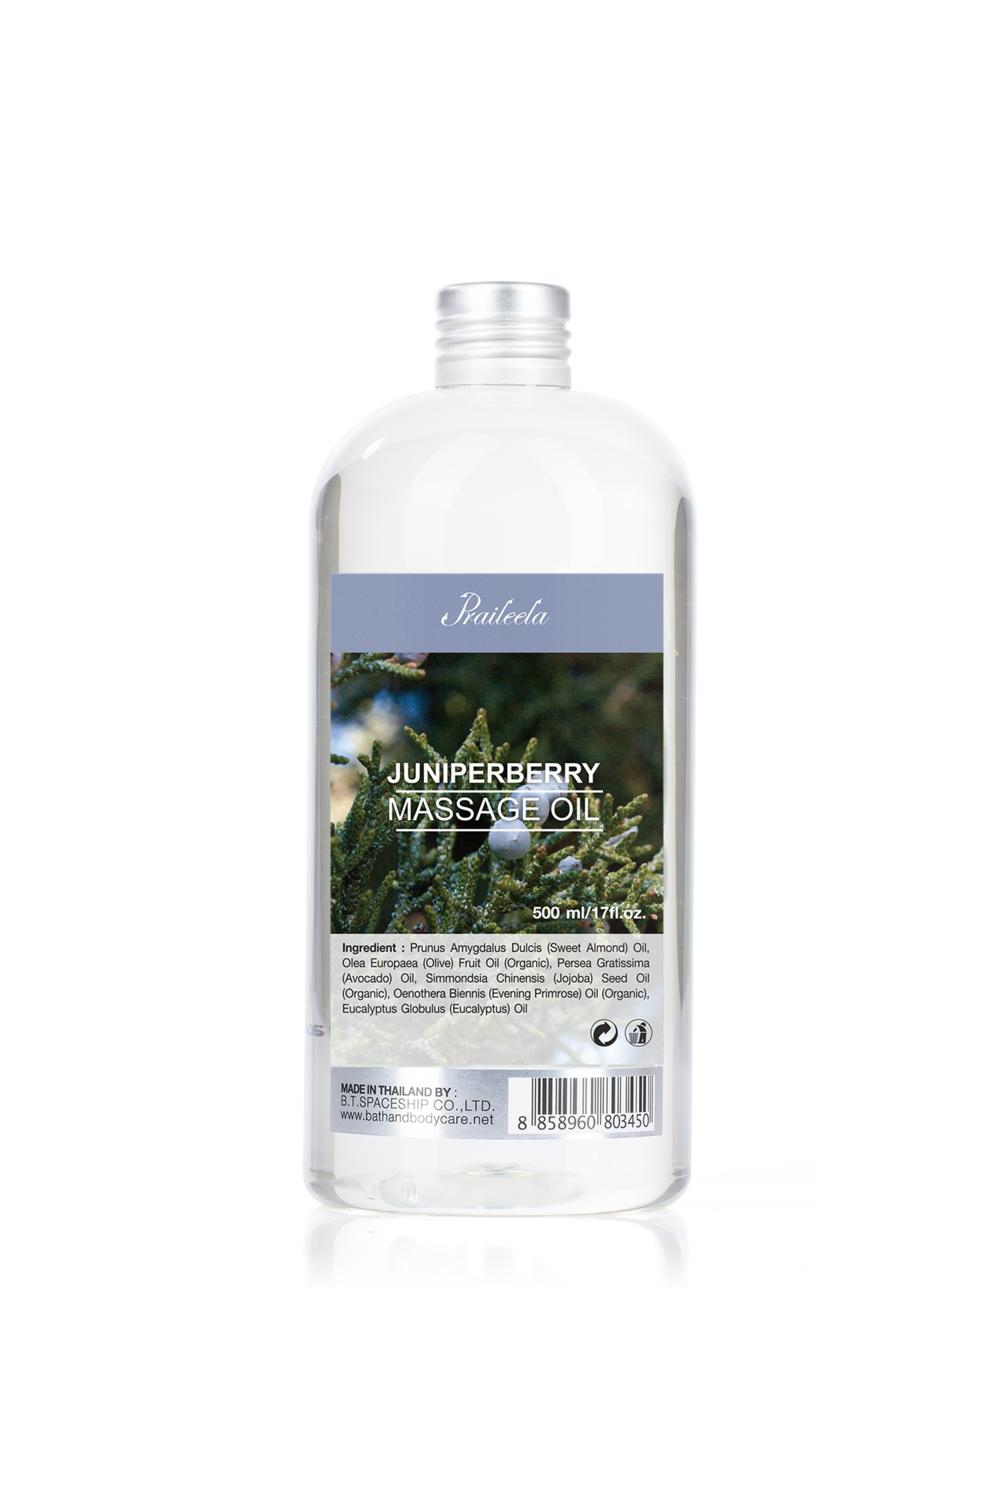 Juniperberry Massage Oil